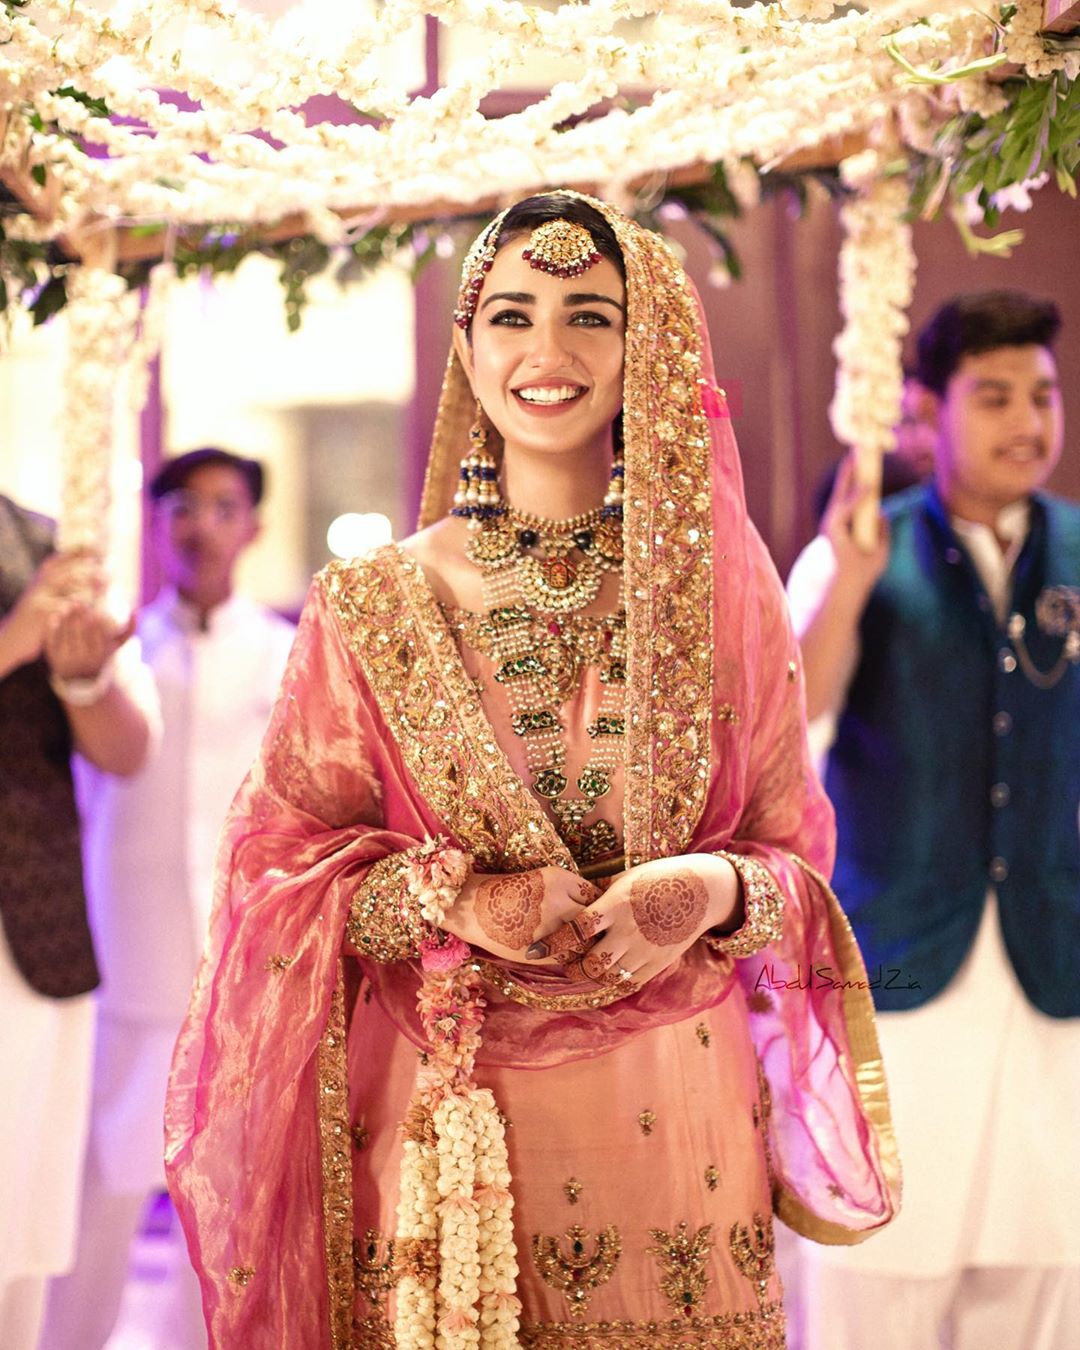 Sarah Khan And Falak Shabbir New Wedding Pictures